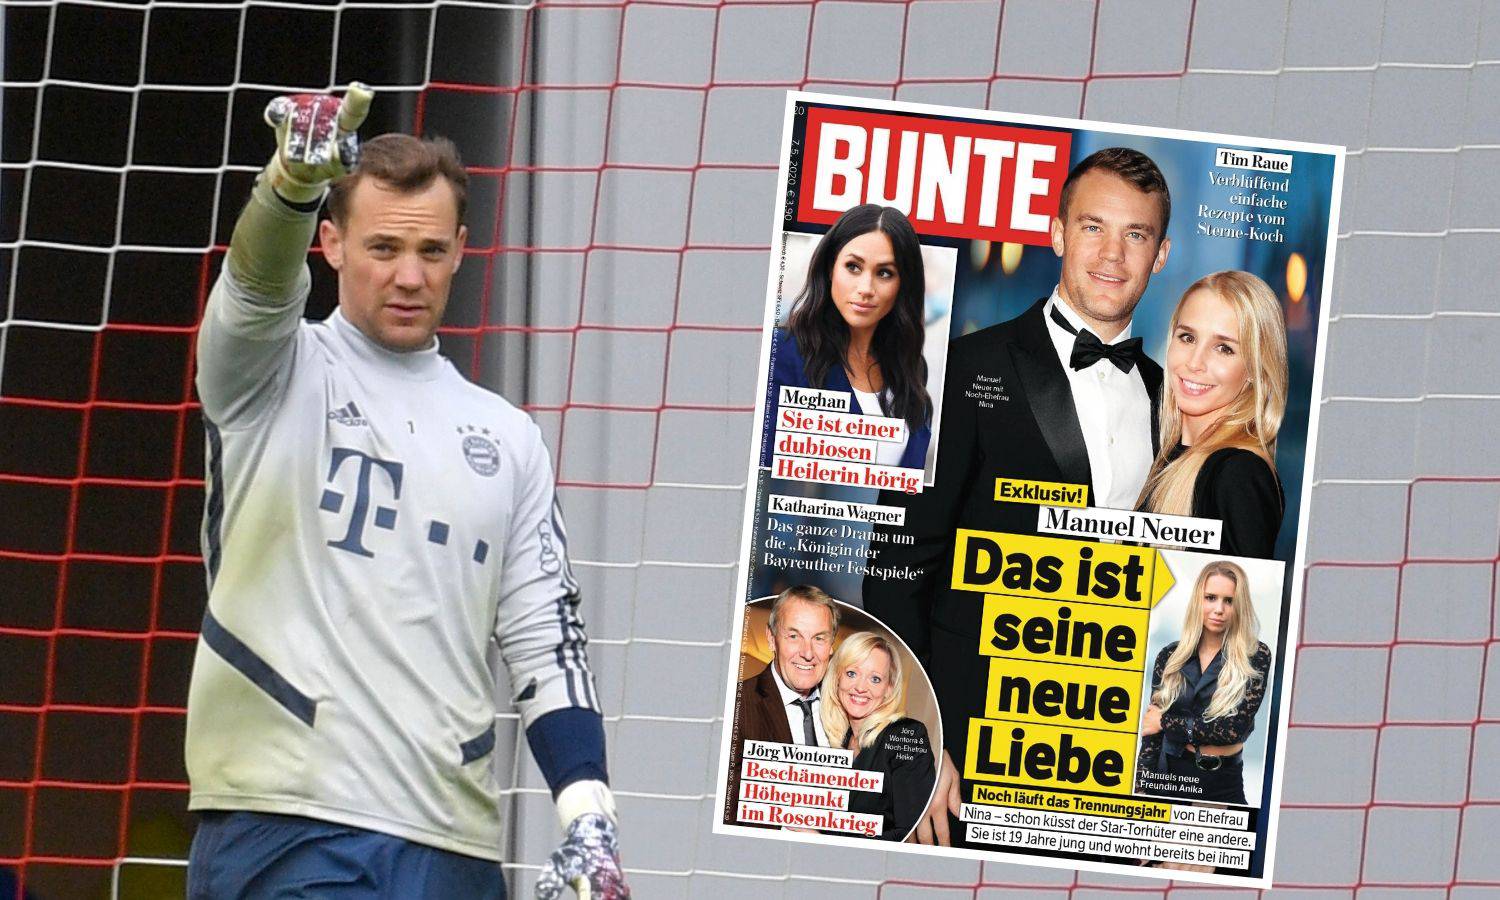 Neuer ljubi 15 godina mlađu, a ona sliči njegovoj bivšoj ženi...